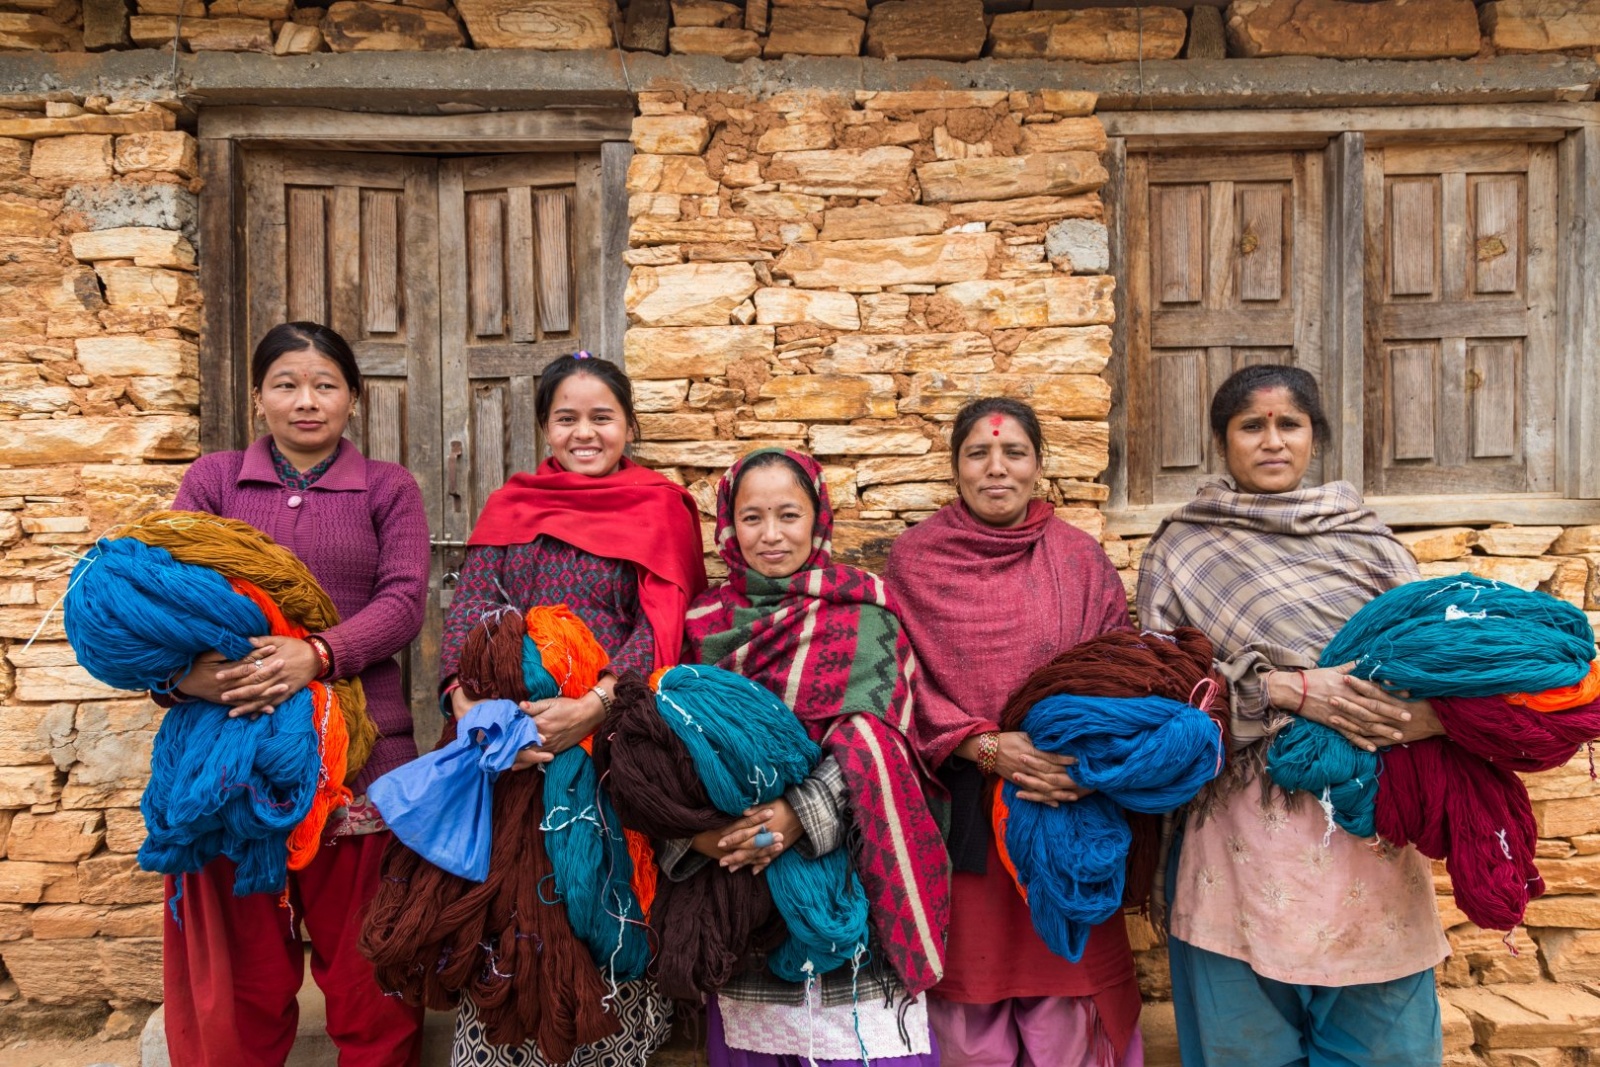 Život v Nepálu: náctileté dívky mají už i čtyři děti, domácí násilí se tají  - Písecký deník